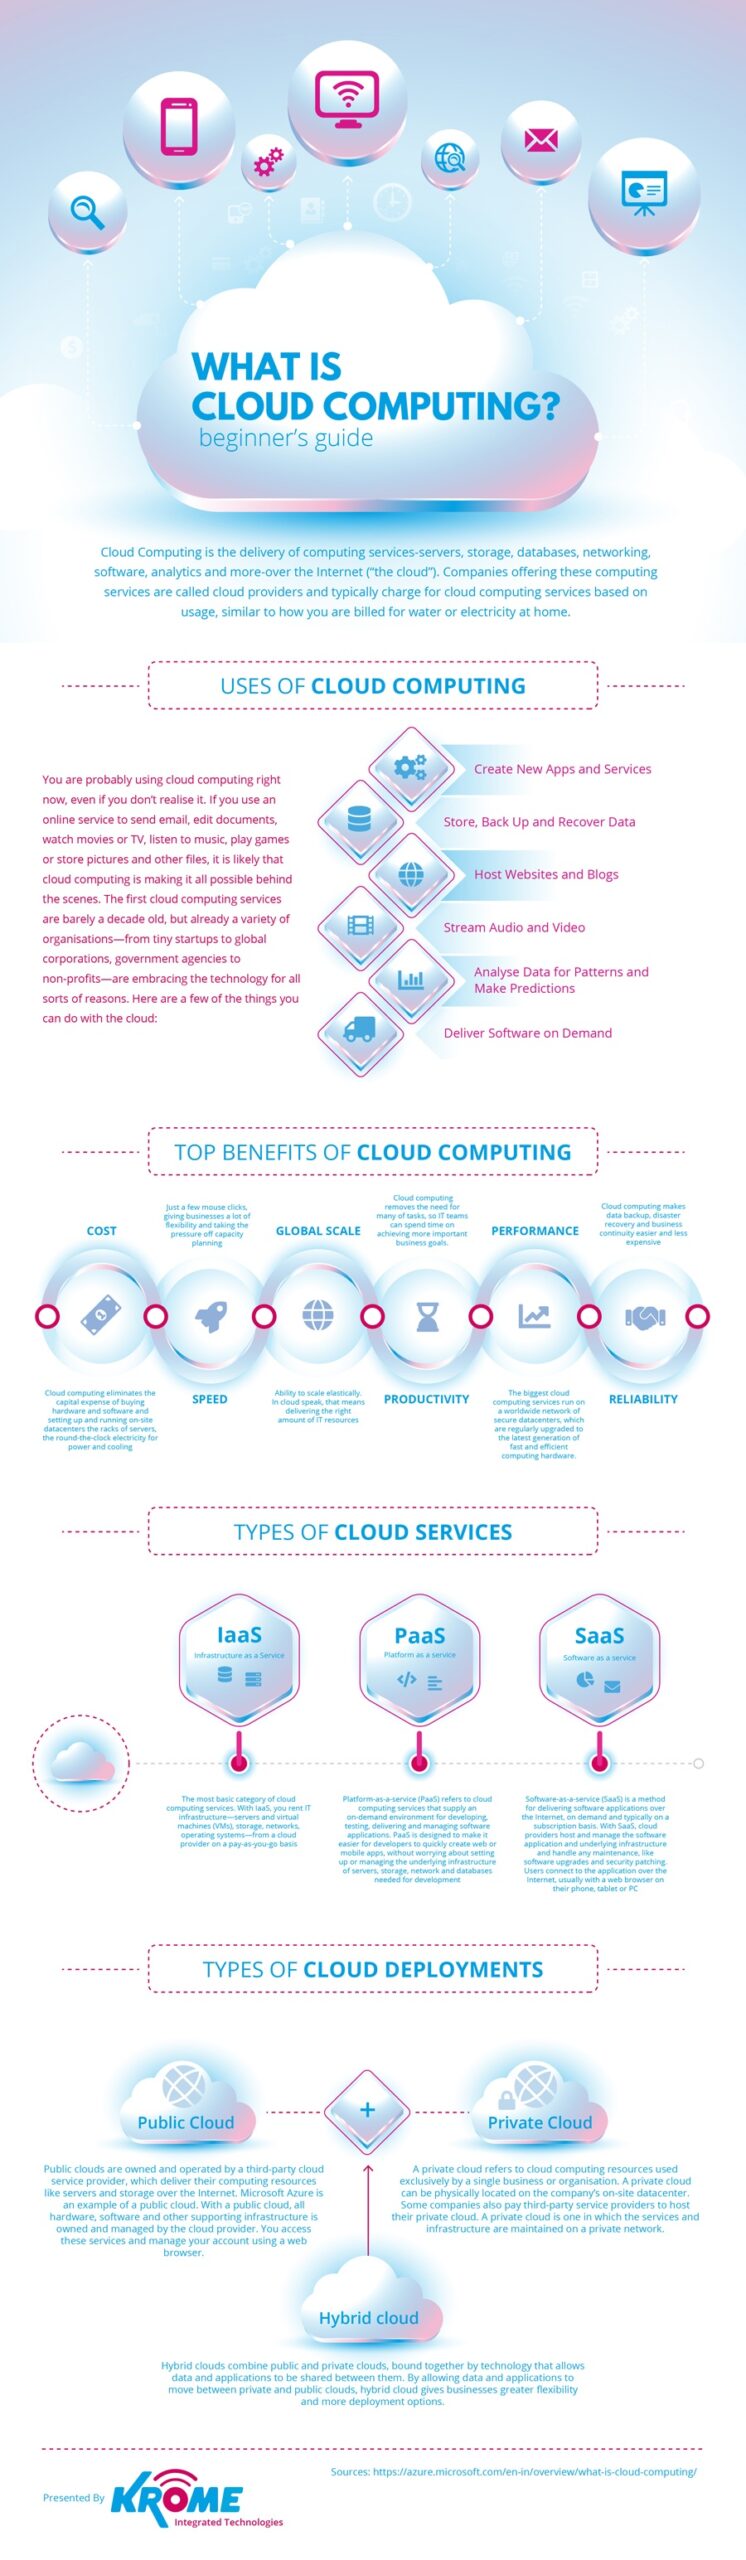 El valor del cloud computing #infografia #infographic #cloudcomputing - TICs y Formacion